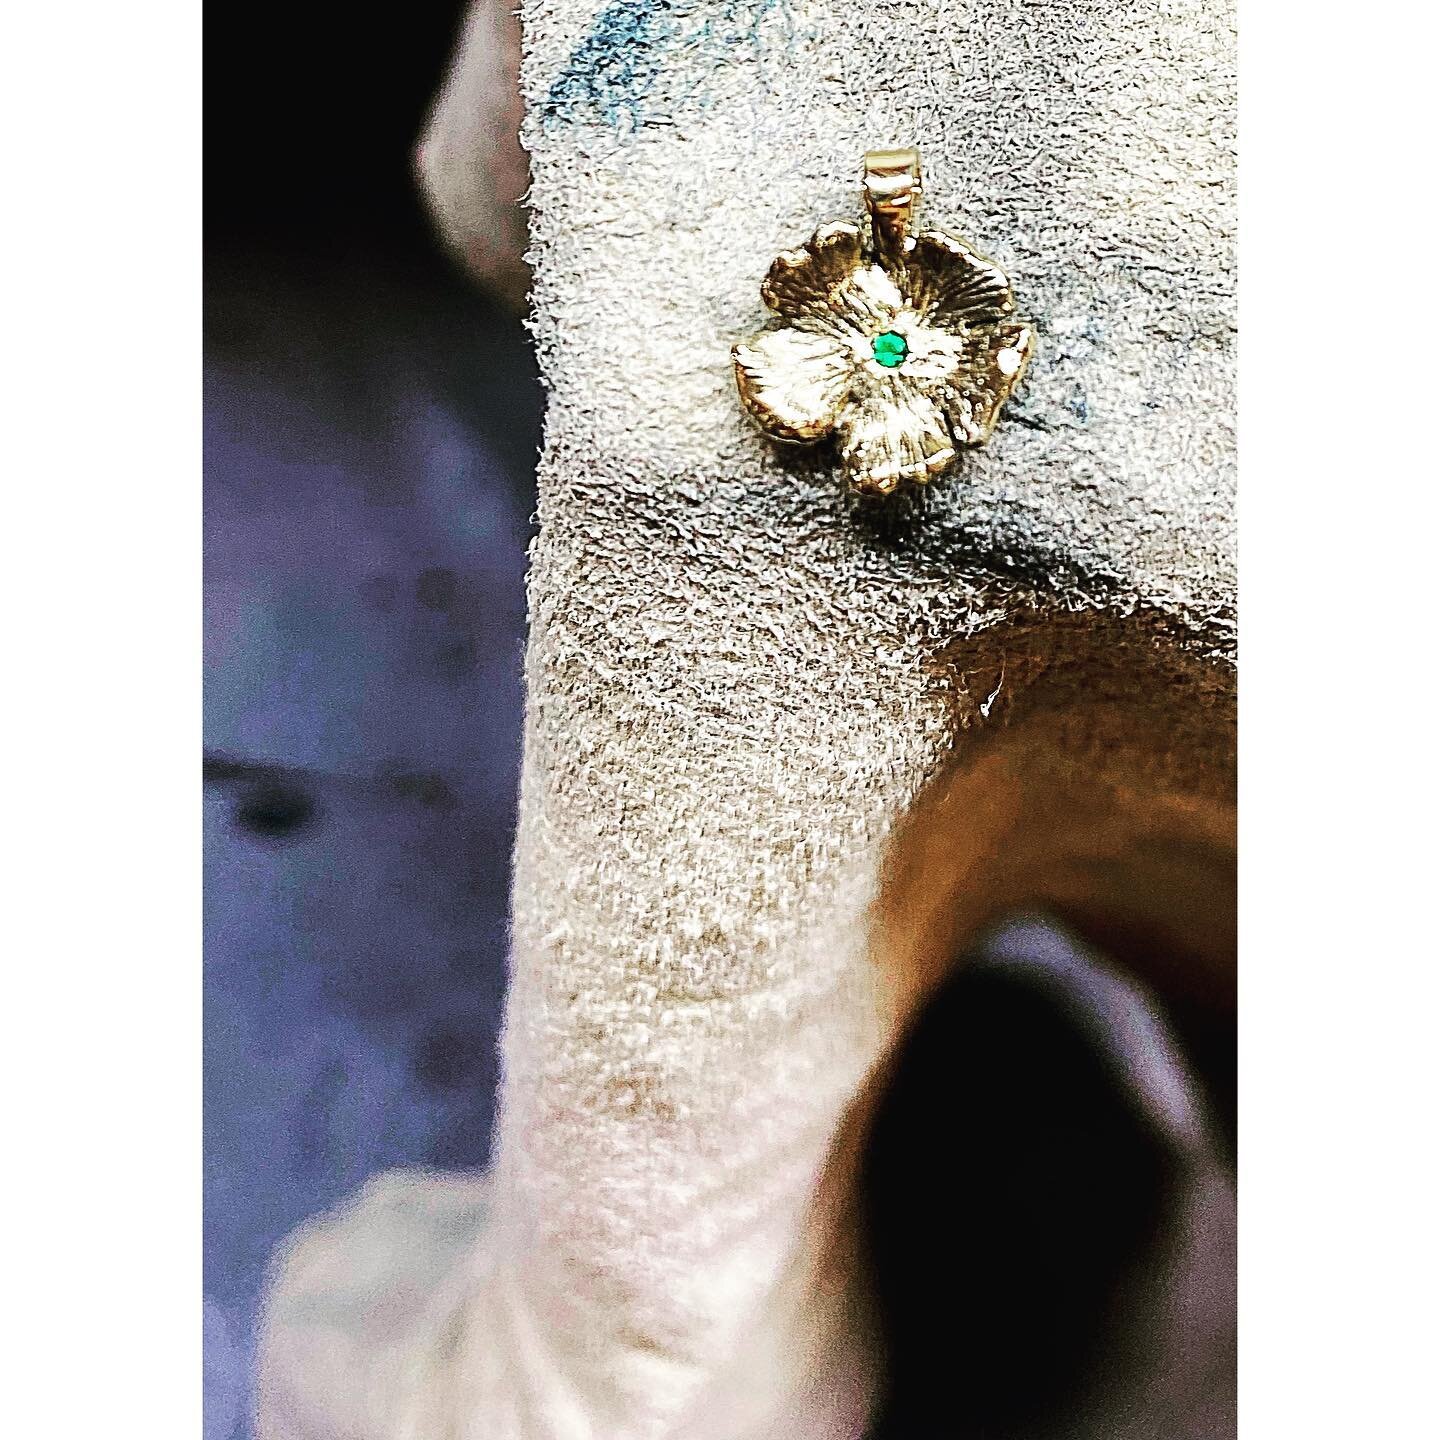 (F) L O V E (R)
.
.
.
#flowers #gold #emerald #handcarved #goldsmith #goldschmiede #goldschmiedin #handcrafted #handcraftedjewellry #kunsthandwerk #handwerk #wien #vienna #1010 #1010vienna #VIE #details #jewellrydesigner #makersgonnamake #smallbusine